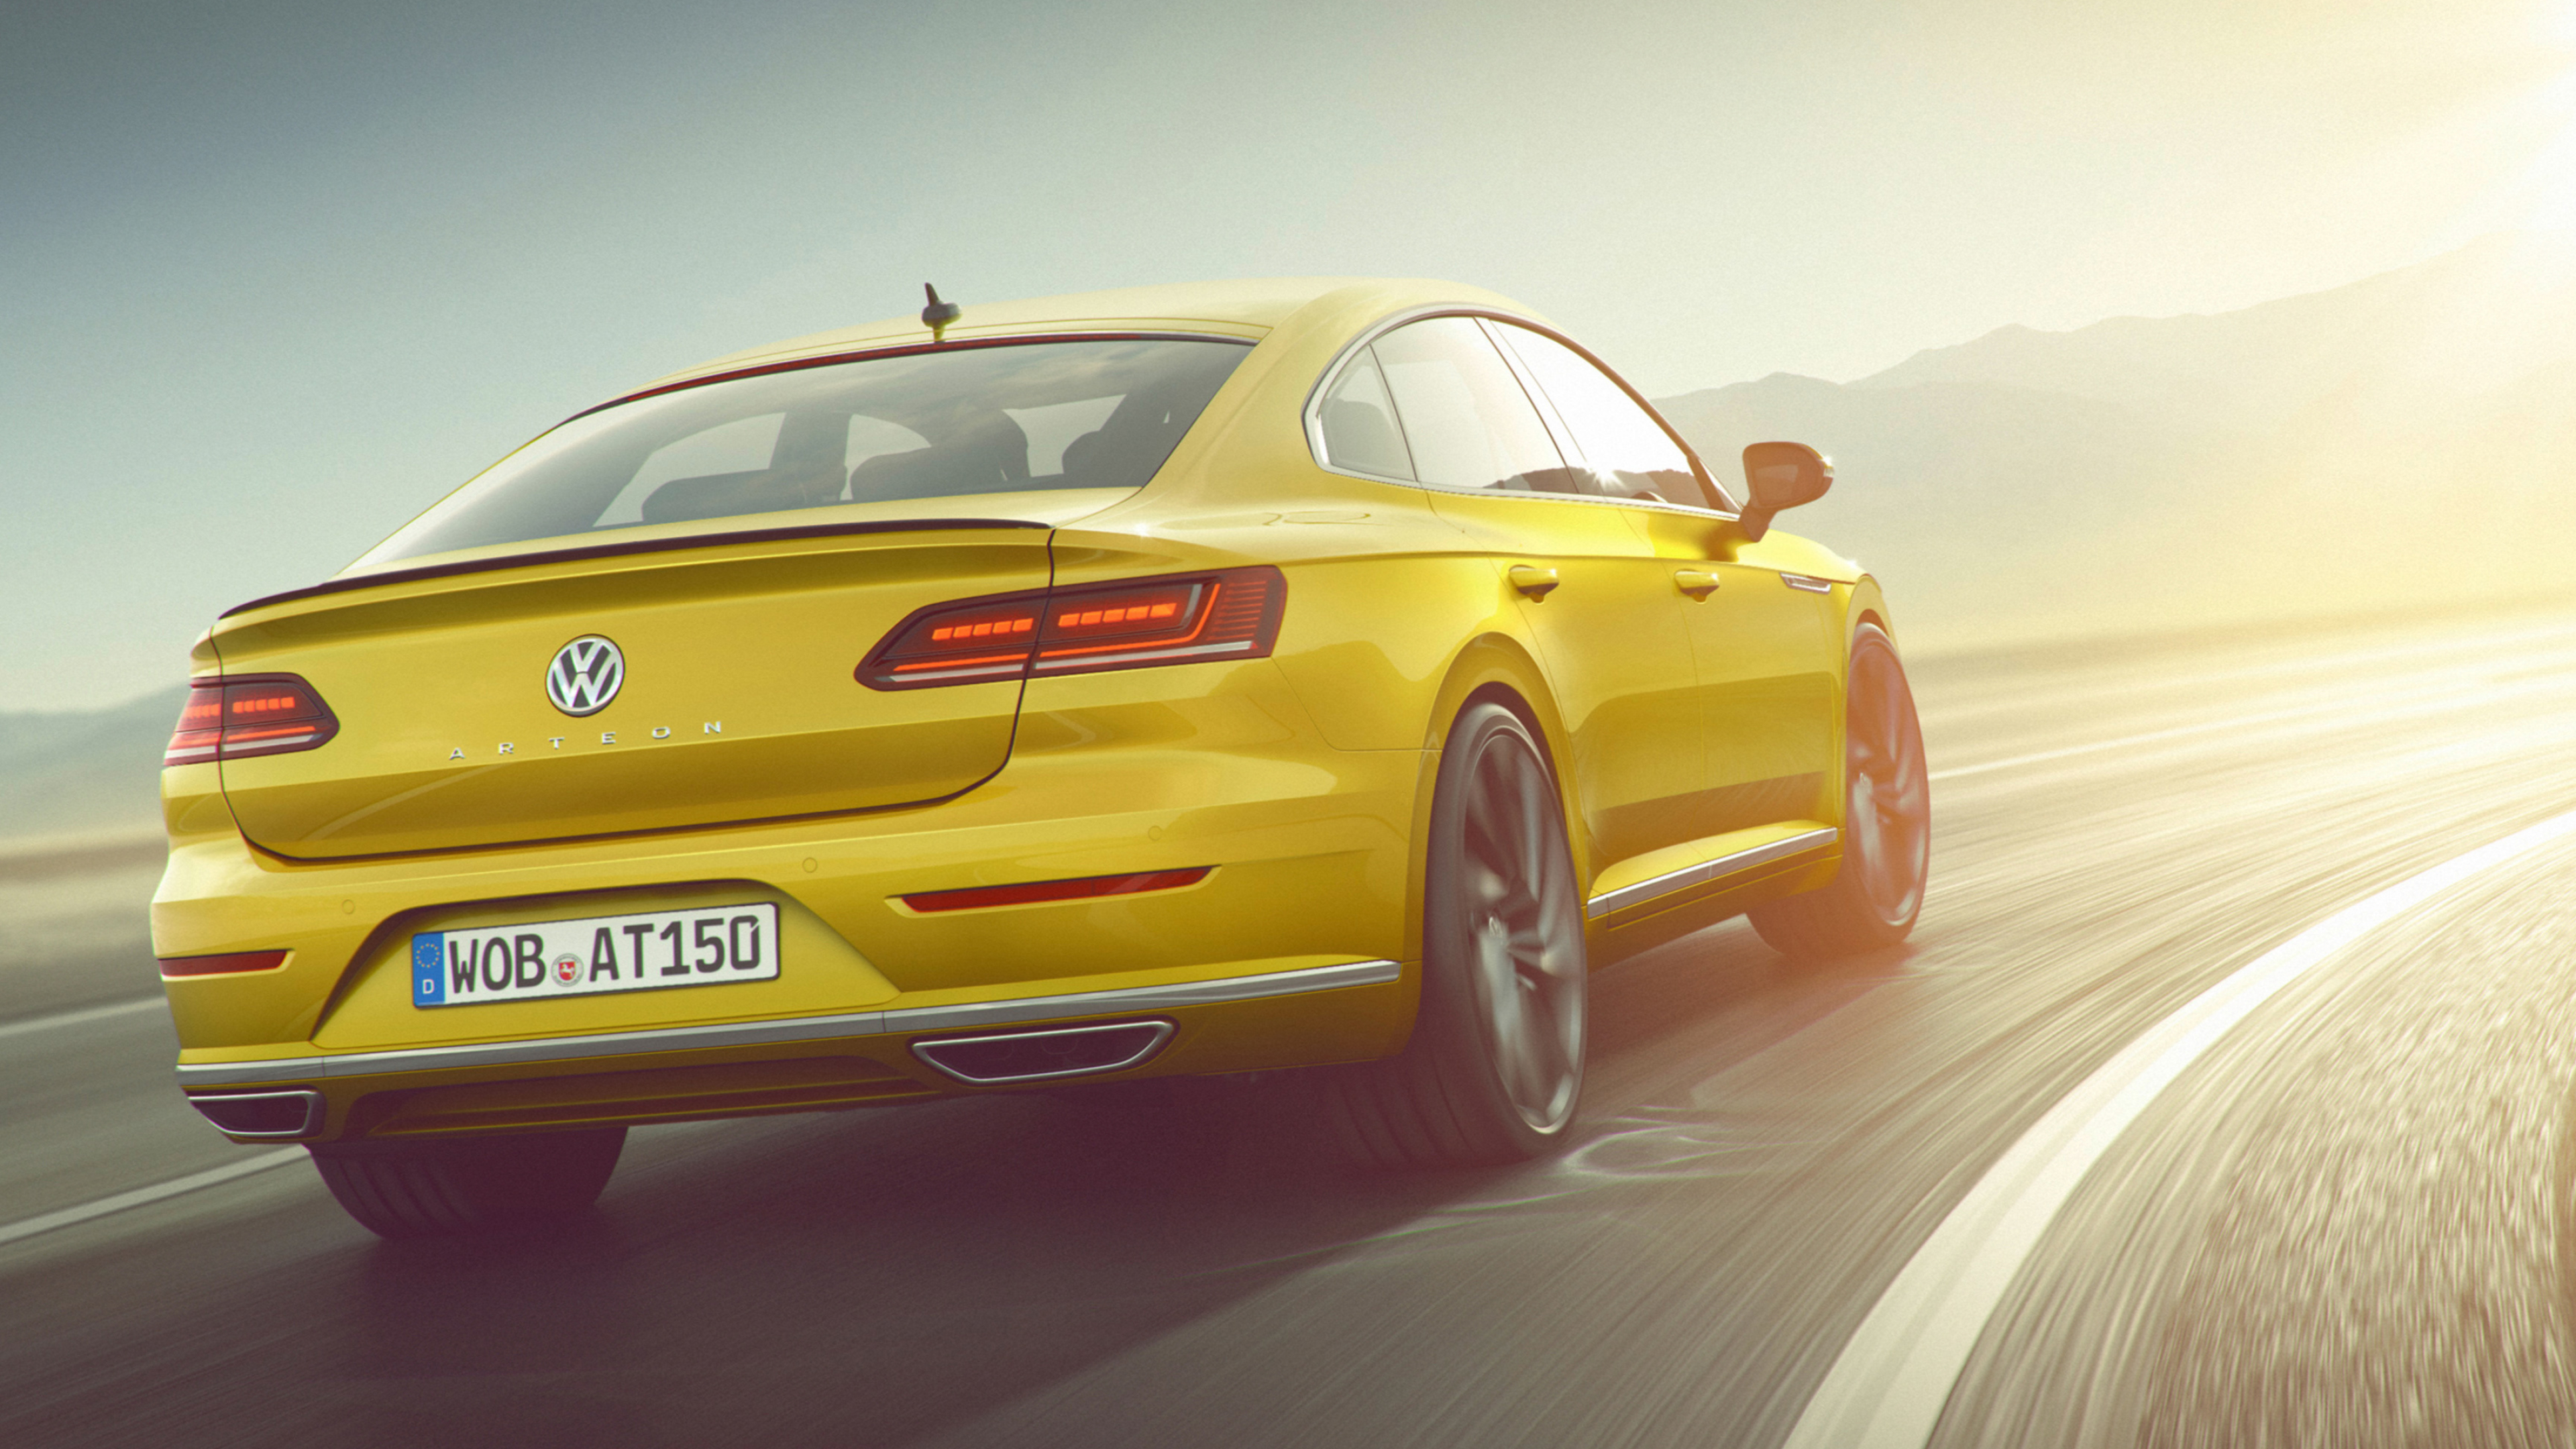 Volkswagen Arteon, Cars desktop wallpapers, 4k Ultra HD, 3840x2160 4K Desktop